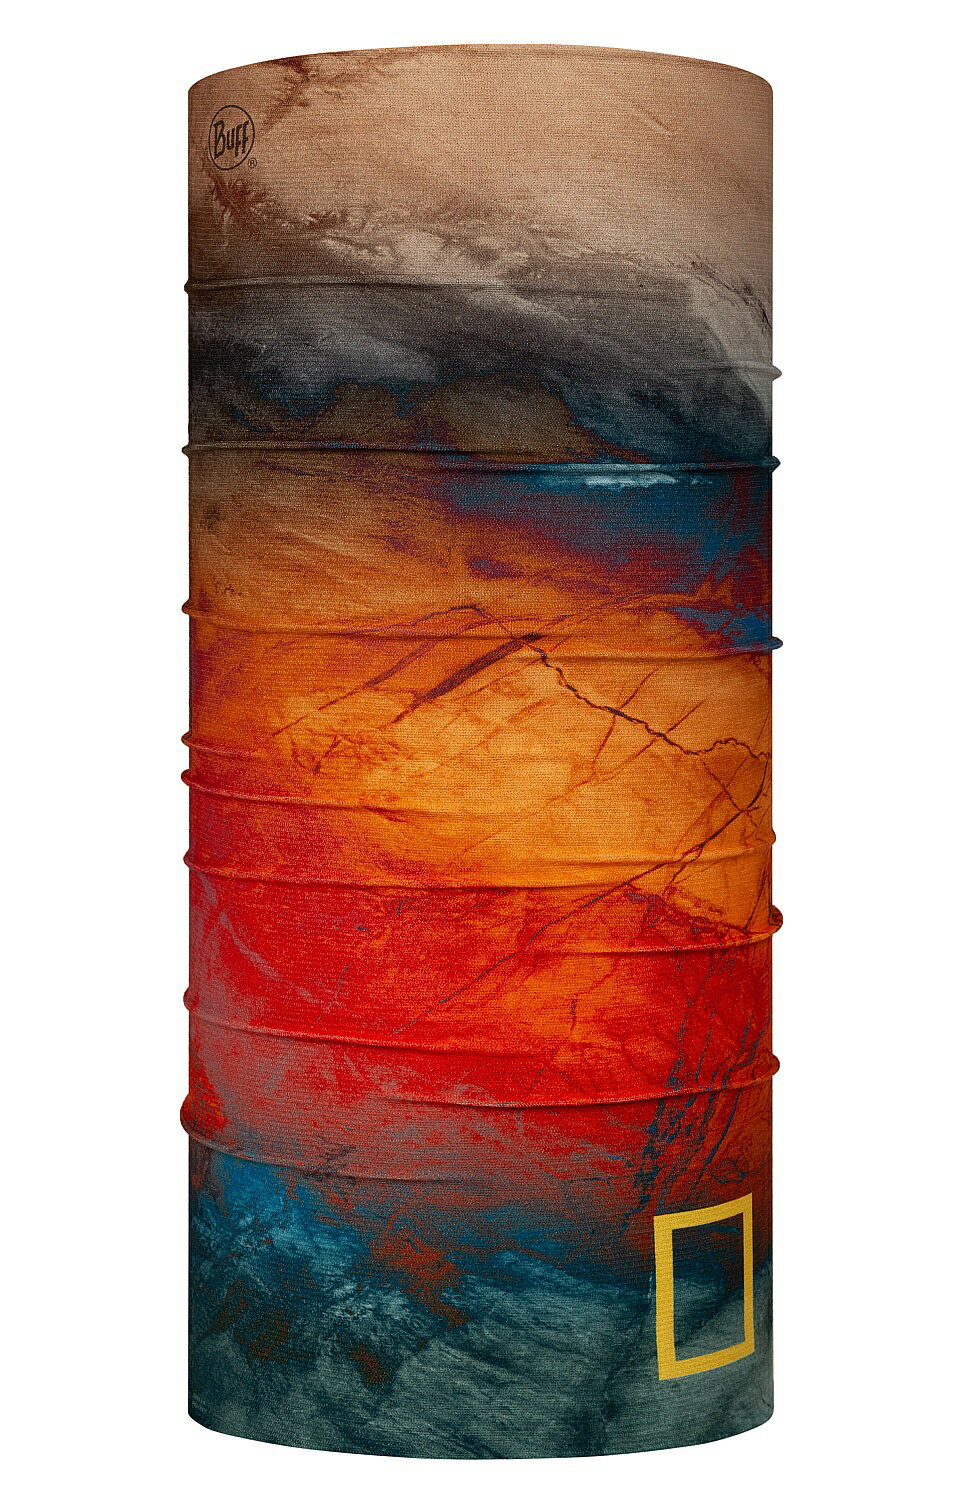 【【蘋果戶外】】BUFF BF128769 西班牙魔術頭巾 Coolnet 抗UV 國家地理驅蟲頭巾 火星表面 國家地理 四向彈性